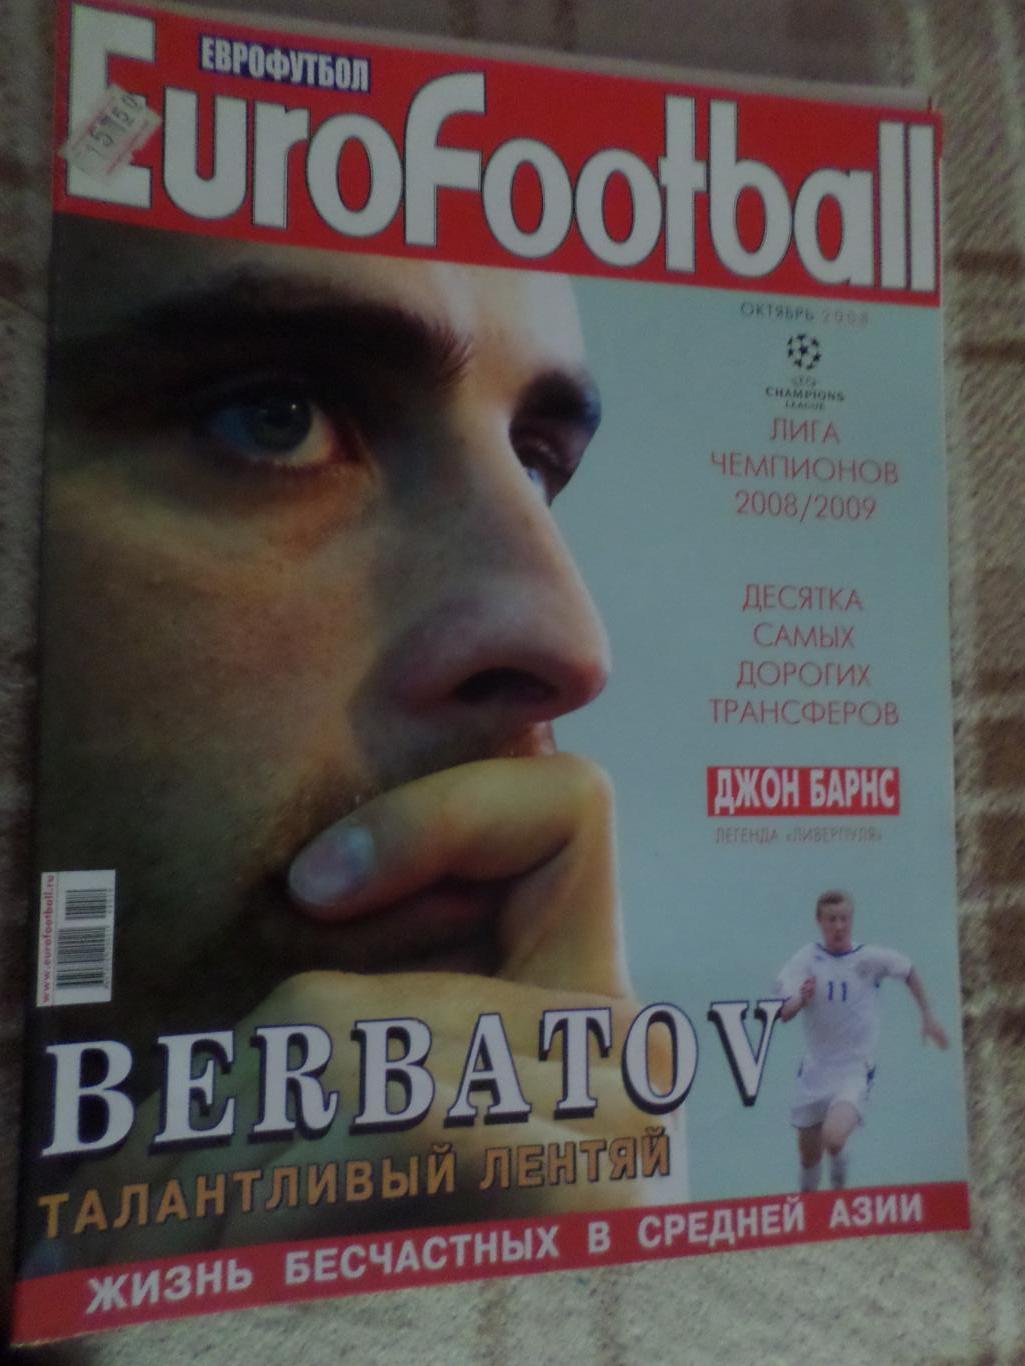 журнал Еврофутбол октябрь 2007 г